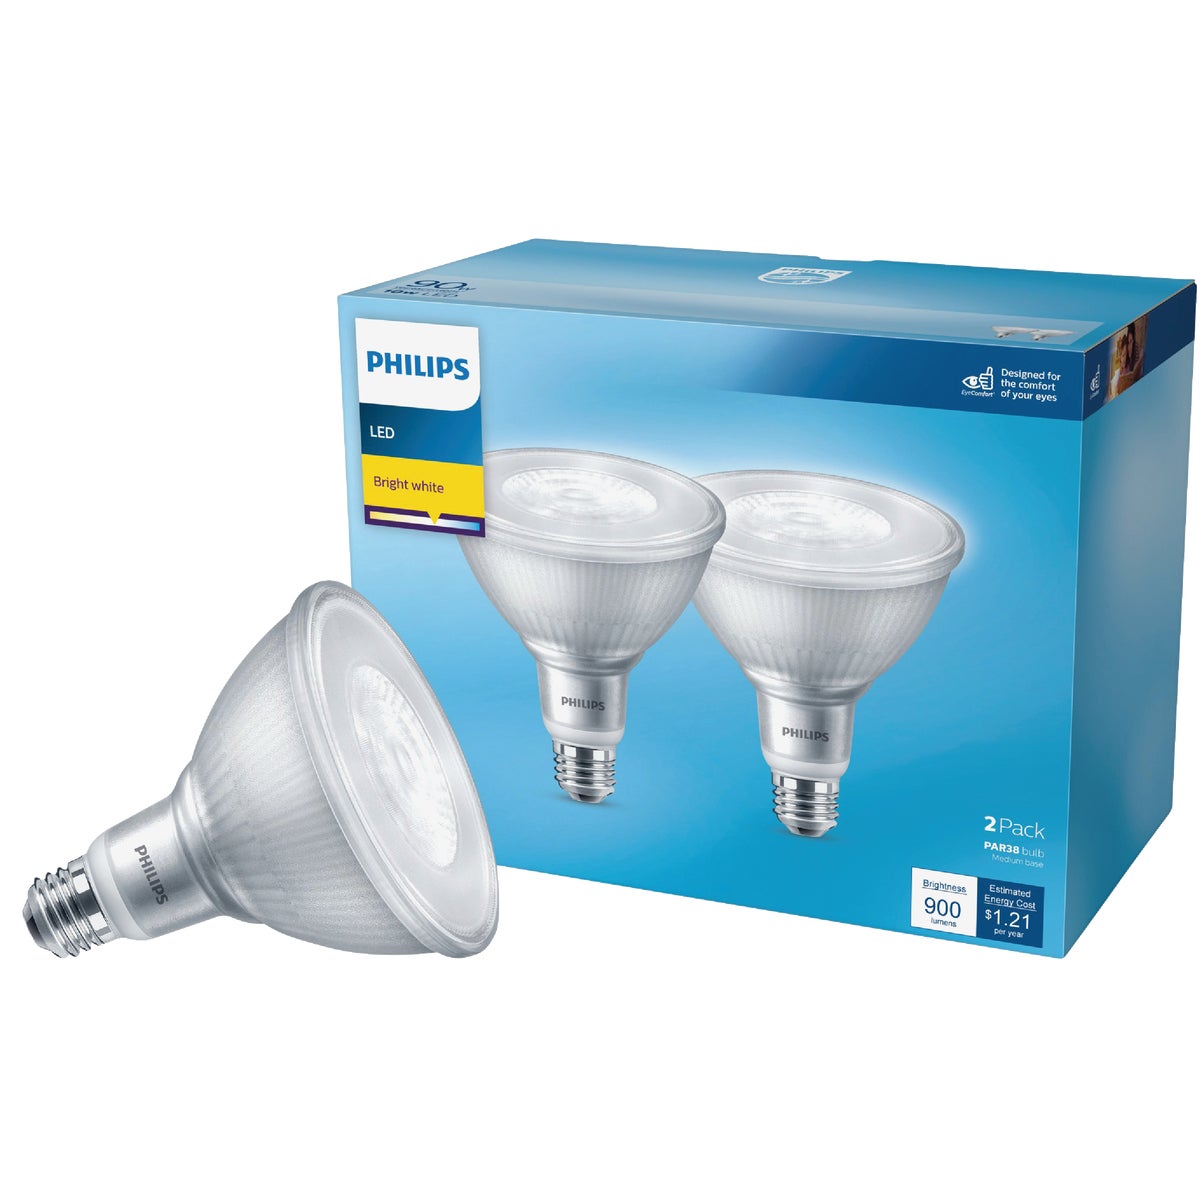 Philips 90W Equivalent Bright White PAR38 Medium LED Floodlight Light Bulb (2-Pack)